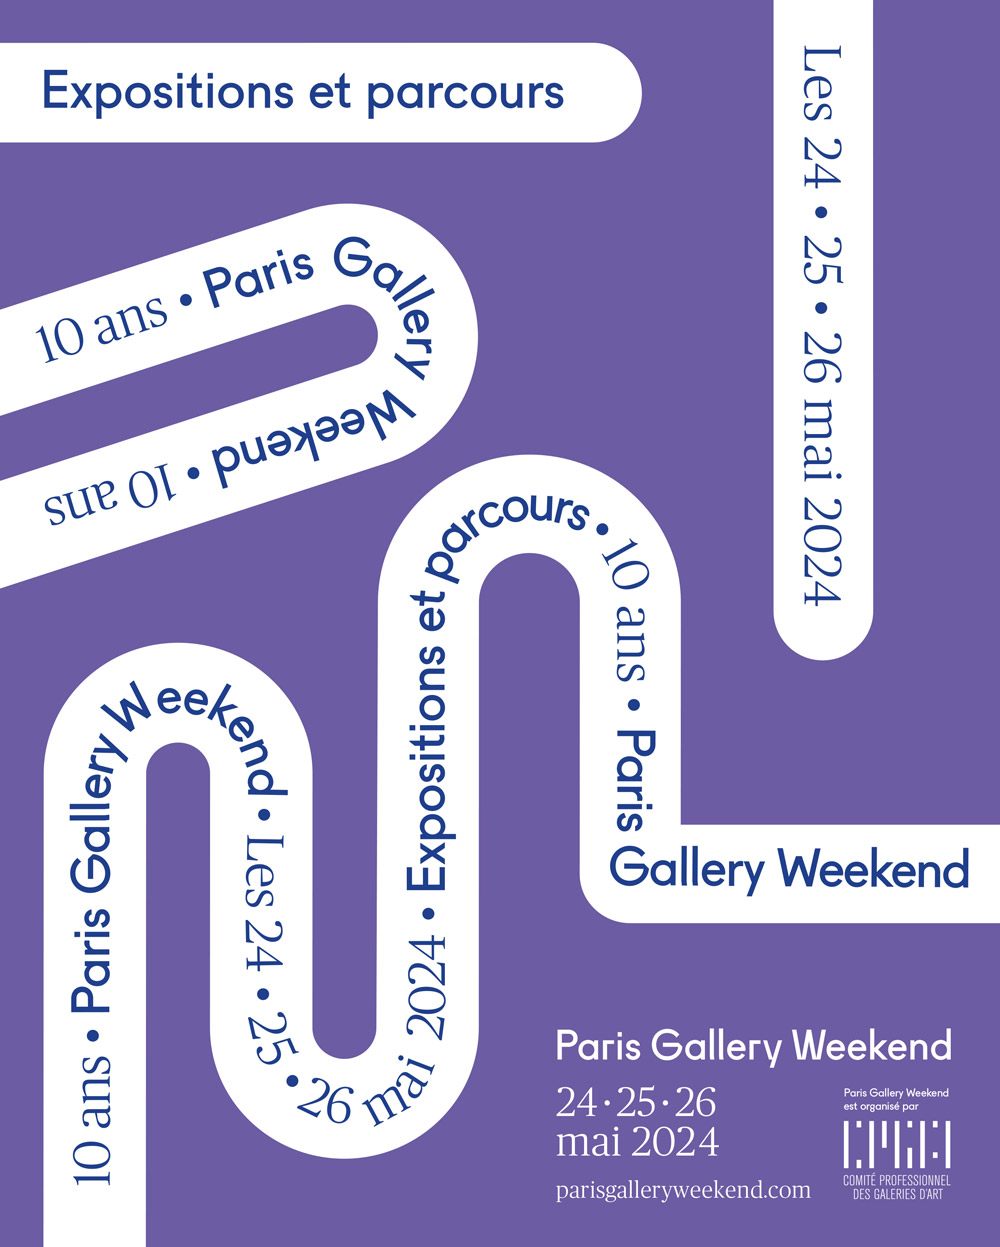 Paris Gallery Weekend